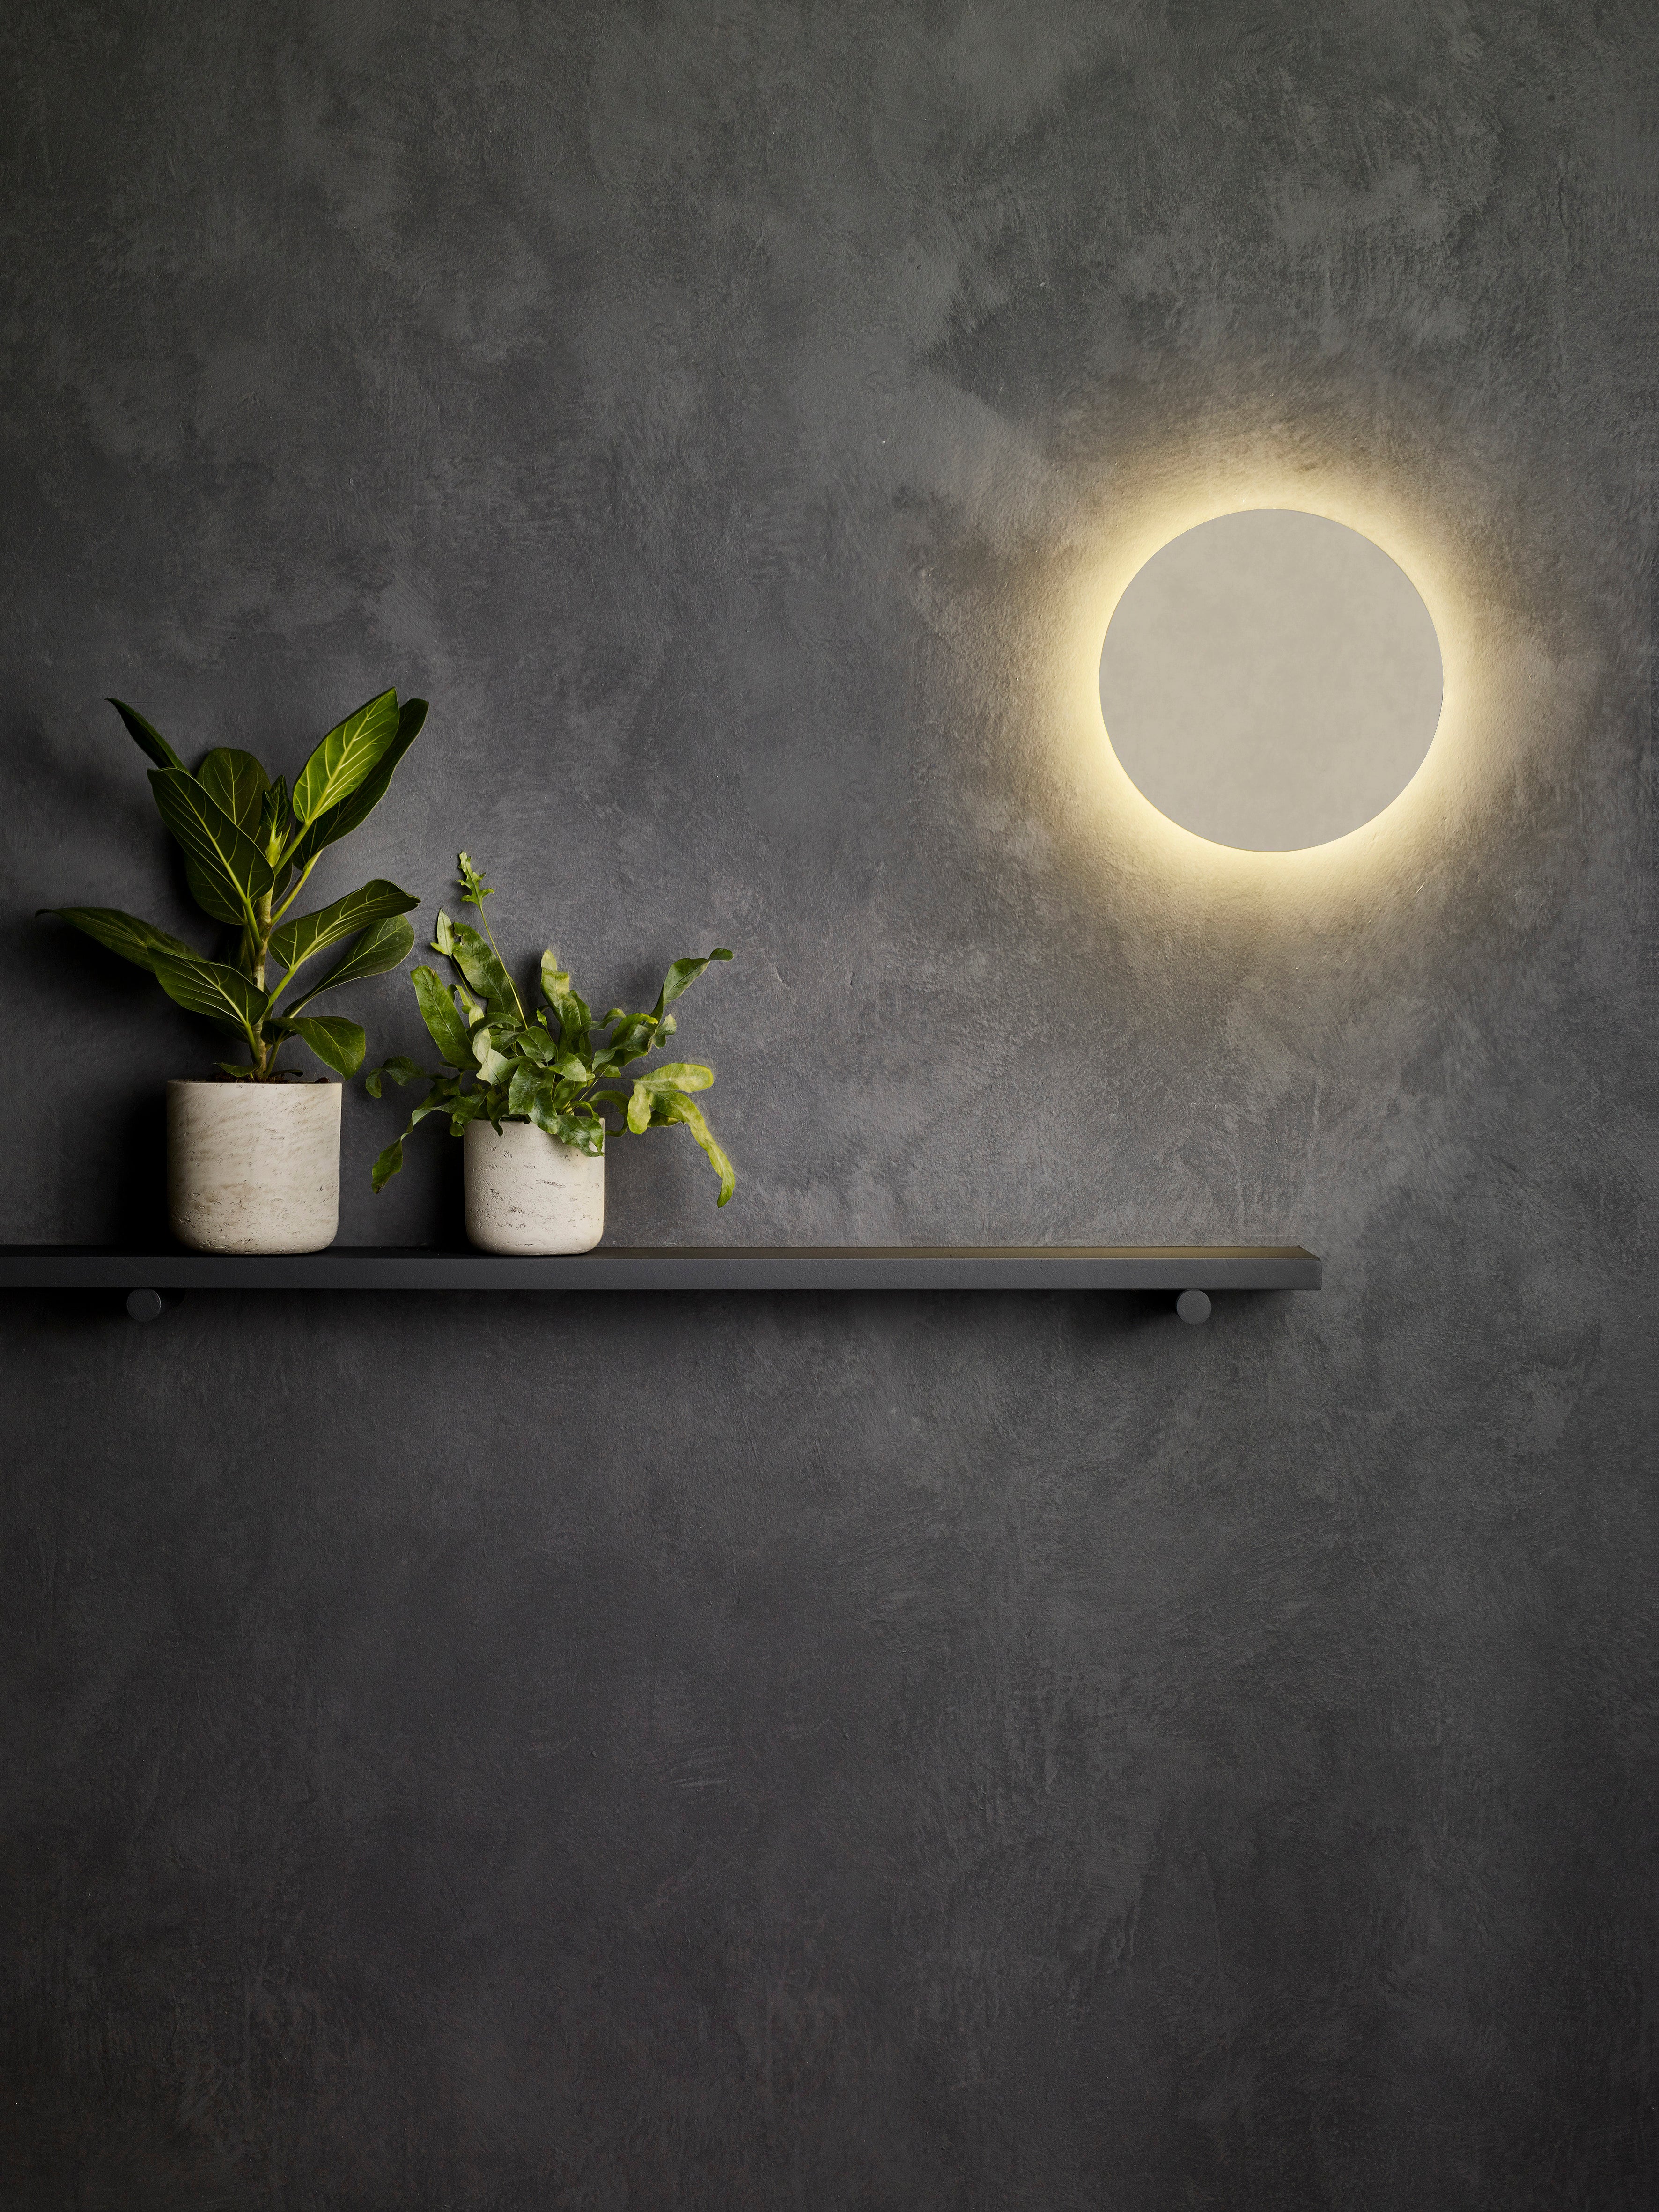 Astro Lighting Eclipse Wall Light Fixtures Astro Lighting   